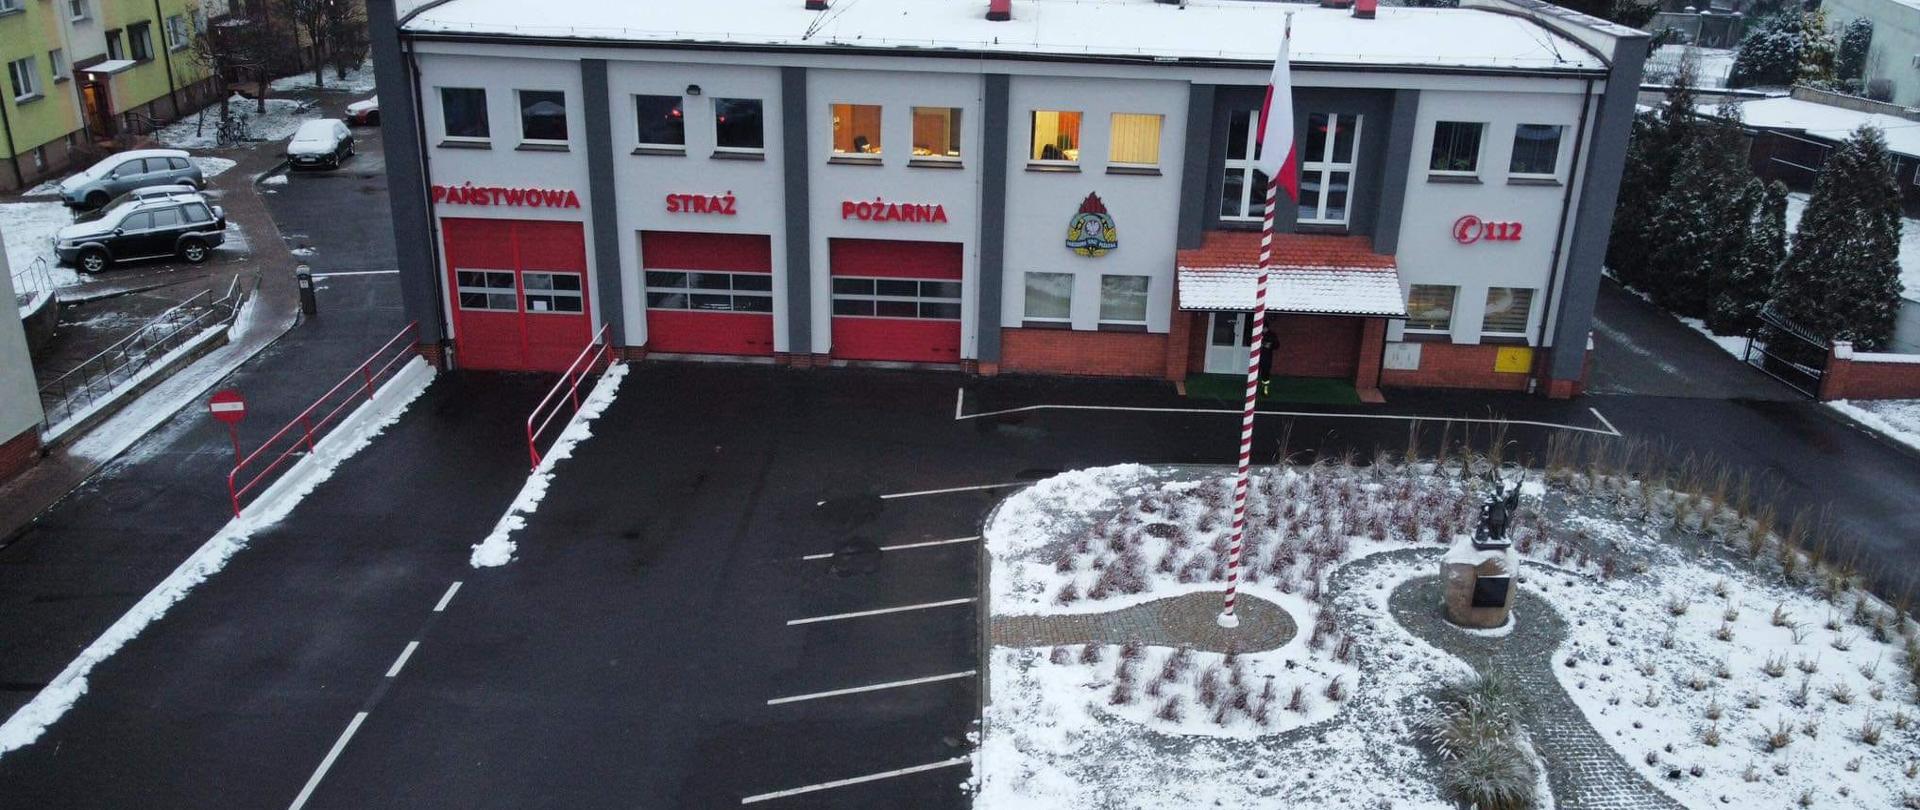 Zdjęcie przedstawia widok z góry budynku komendy powiatowej PSP w Krotoszynie oraz teren zewnętrzny po nasadzeniu roślinności. Na elewacji budynku napis Państwowa Straż Pożarna, logo PSP i numer alarmowy 112. 